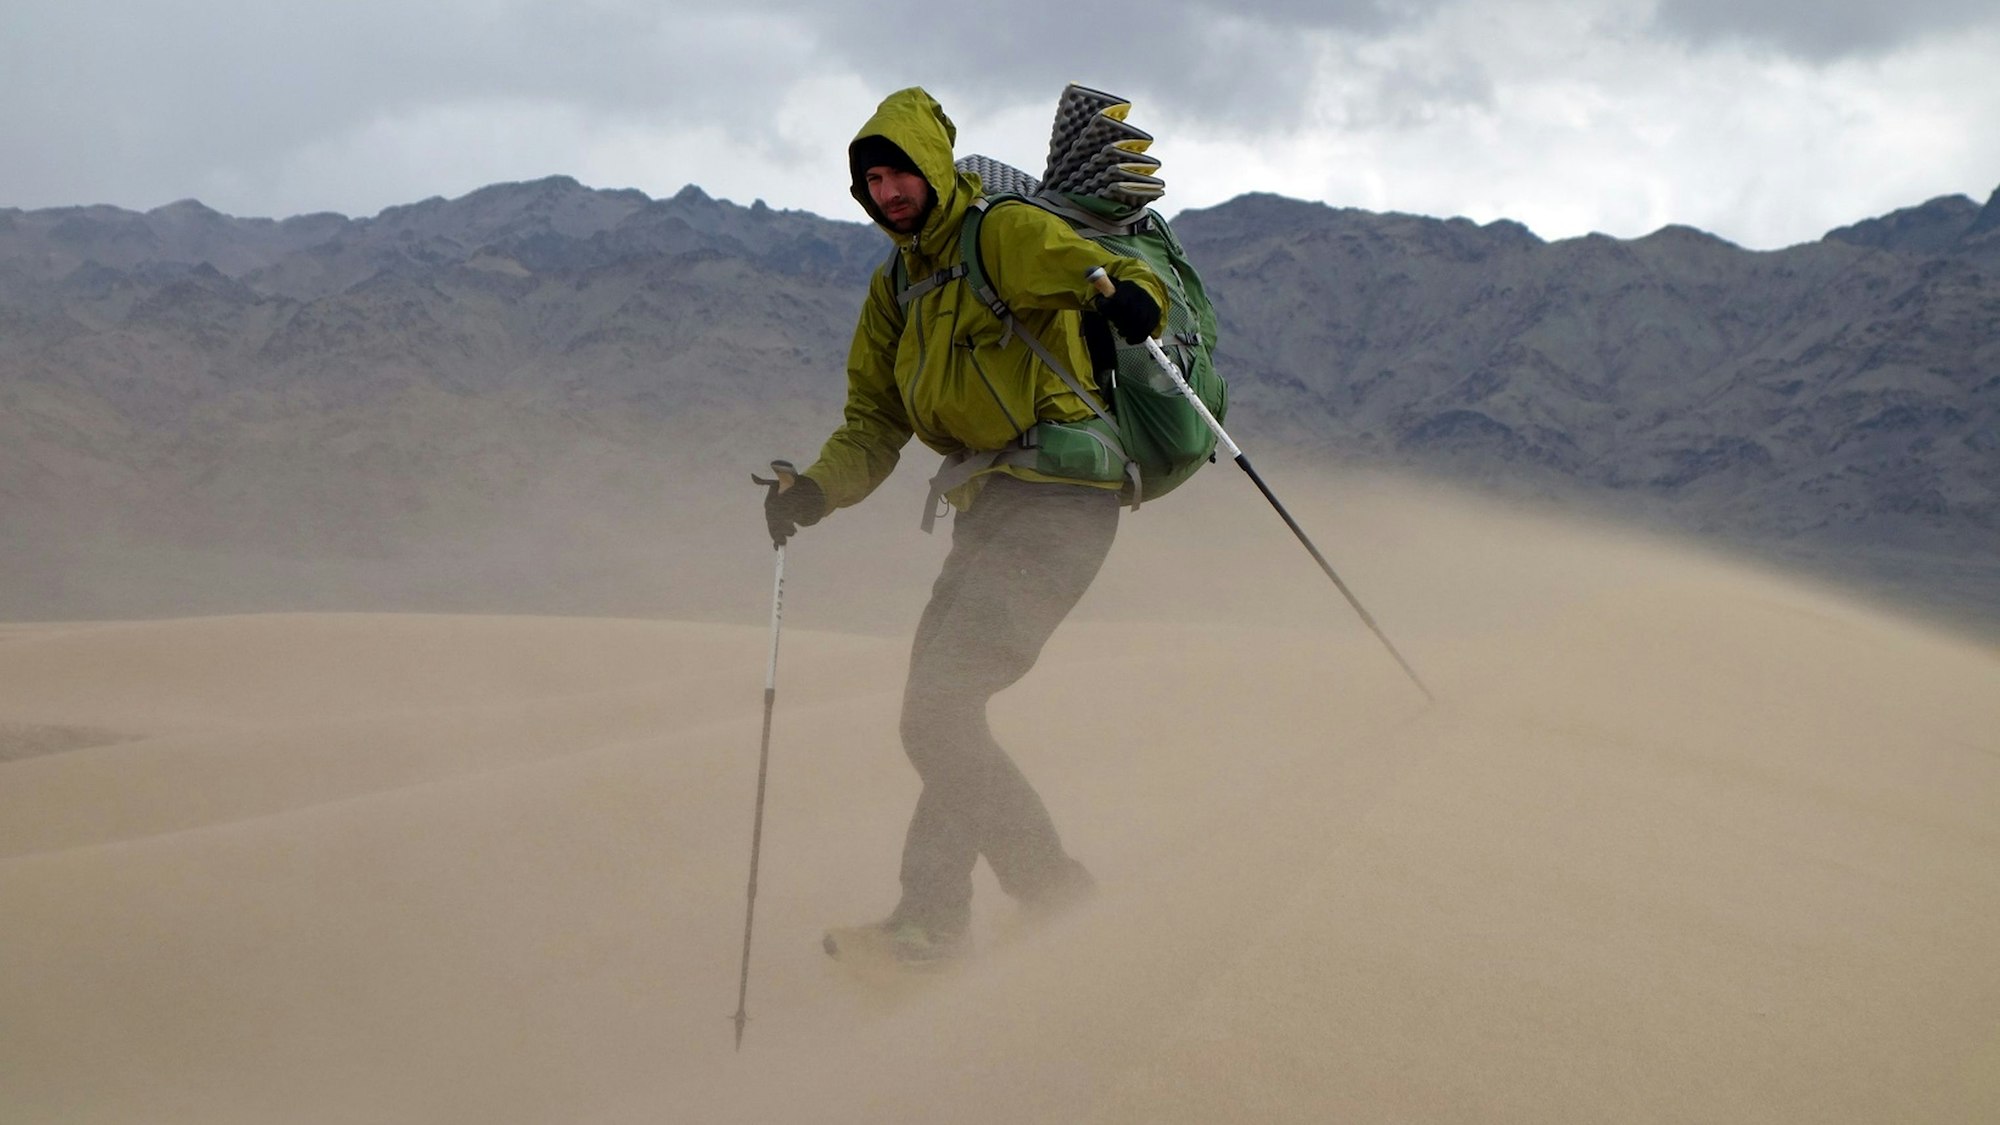 Das Bild zeigt Michael Giefer aus Lindweiler in der Wüste Gobi. Er hat einen Rucksack auf dem Rücken und geht mit Walking-Stöcken durch den vom Wind aufgewirbelten Sand einer Düne.